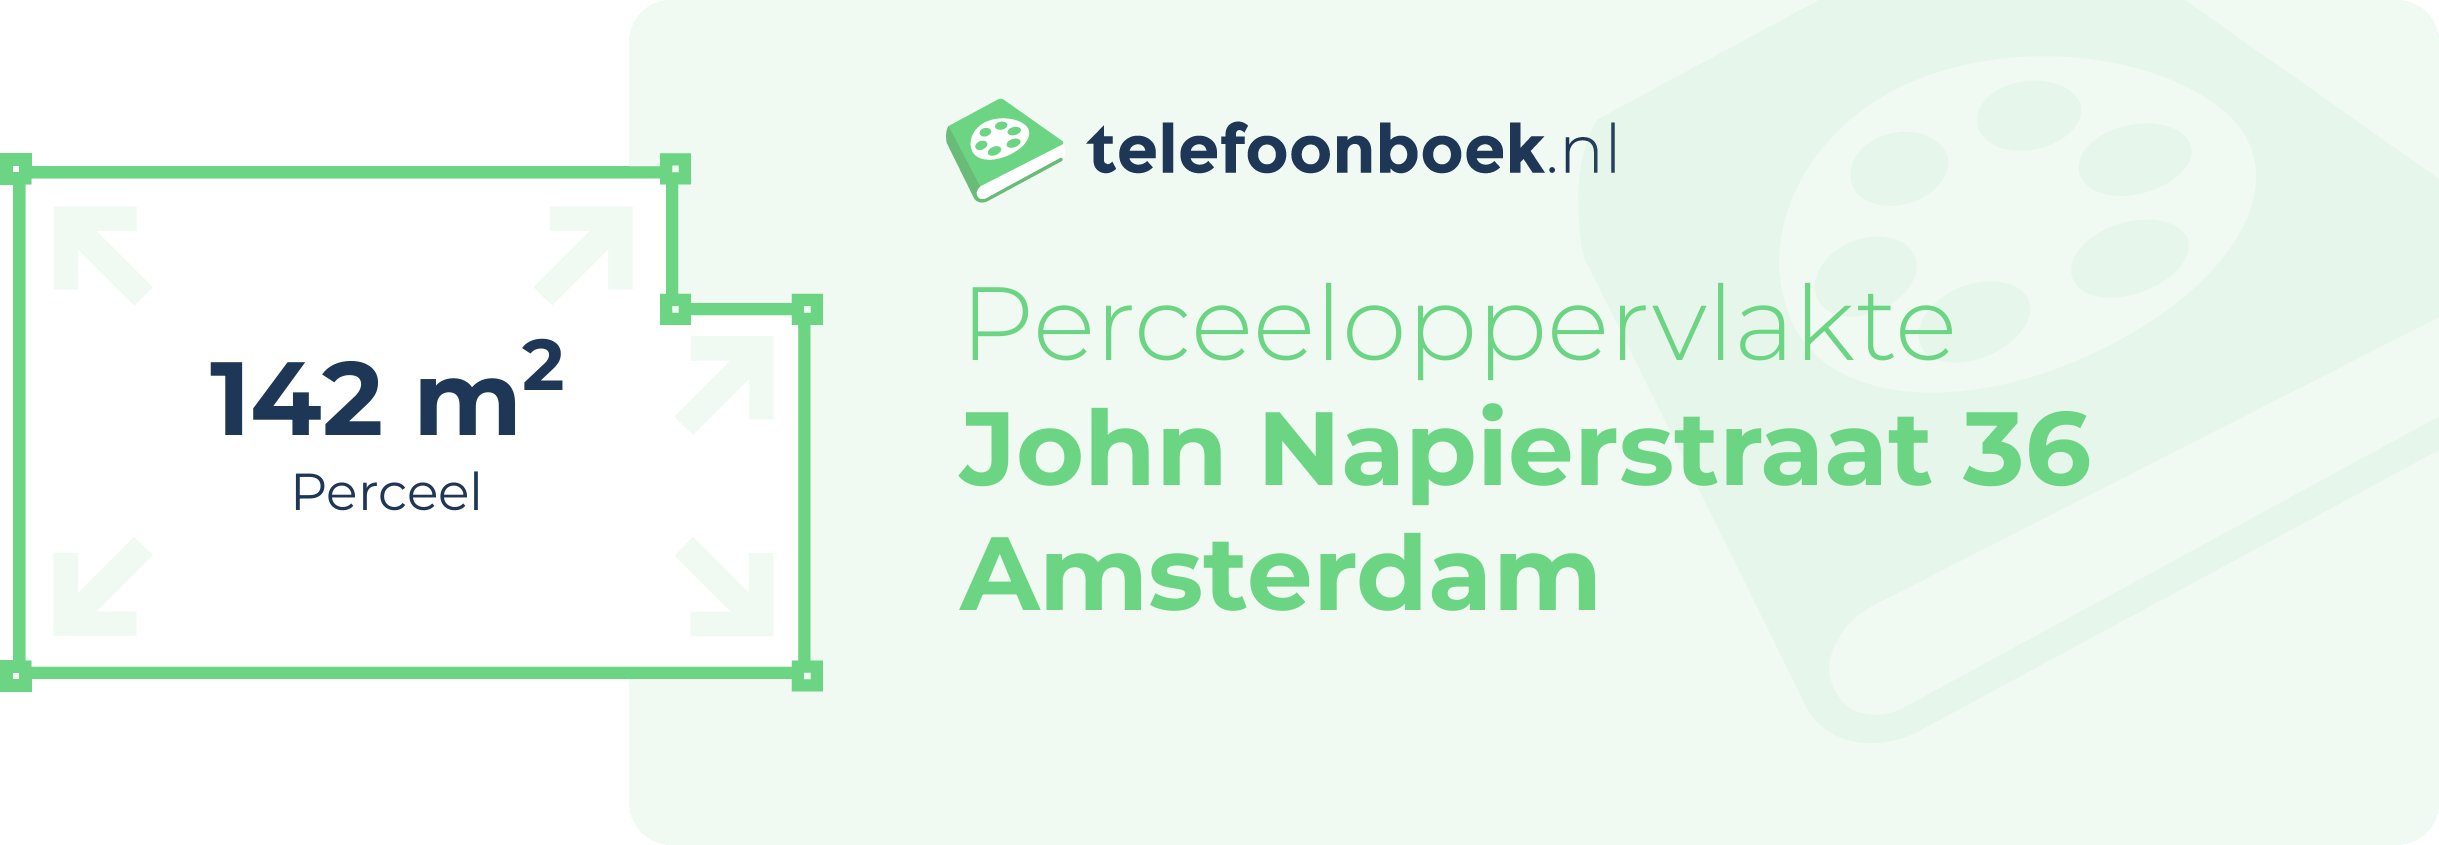 Perceeloppervlakte John Napierstraat 36 Amsterdam